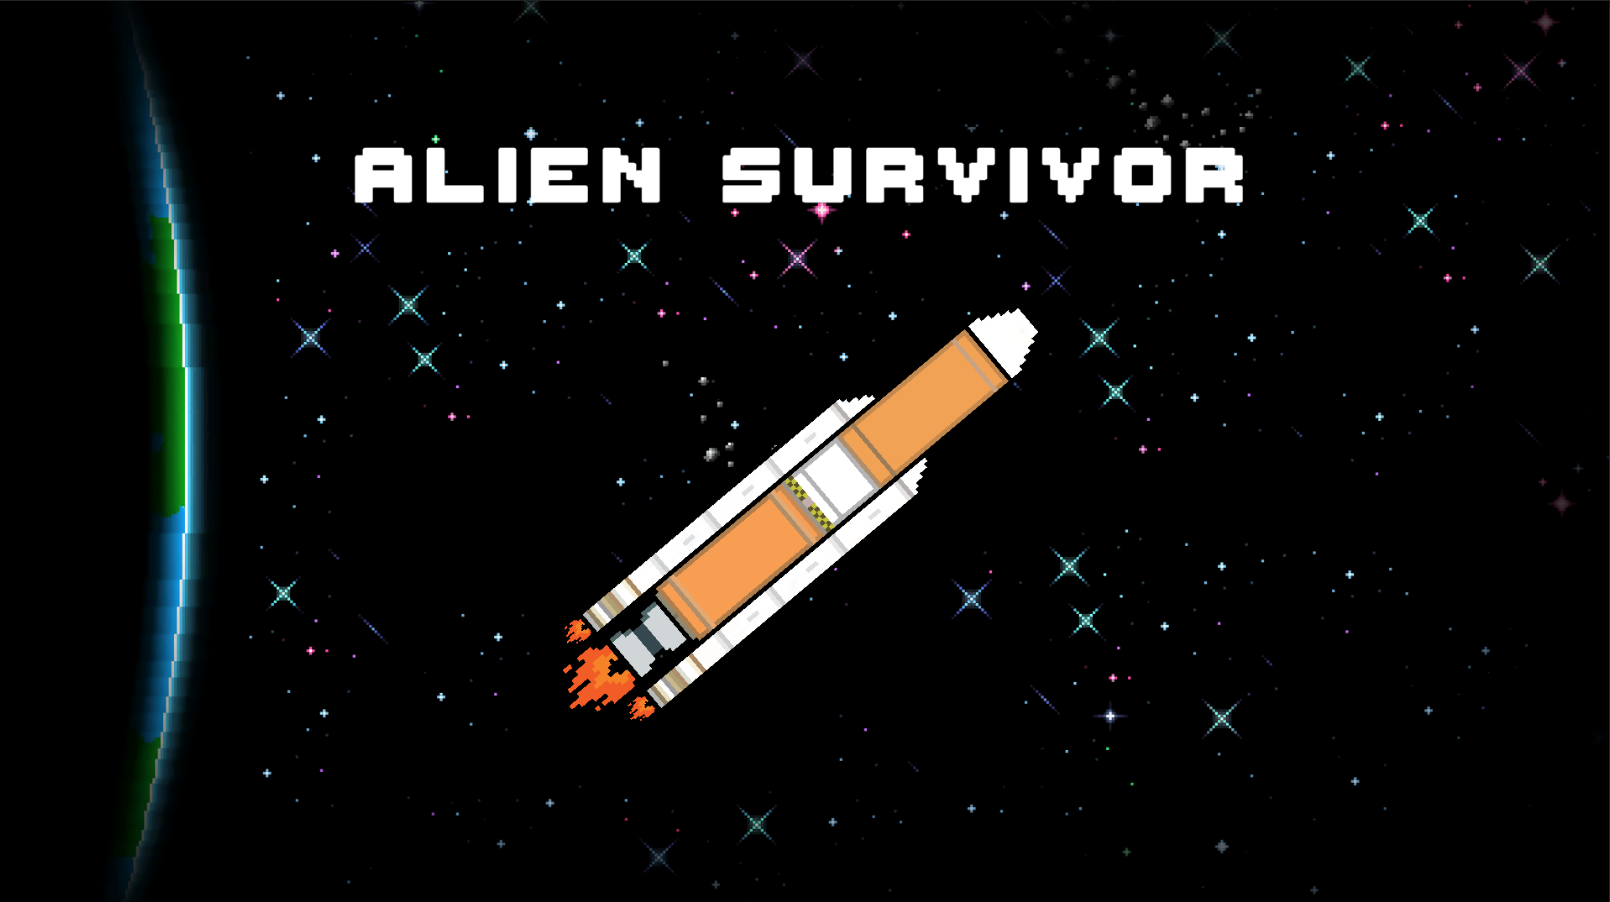 Alien Survivor